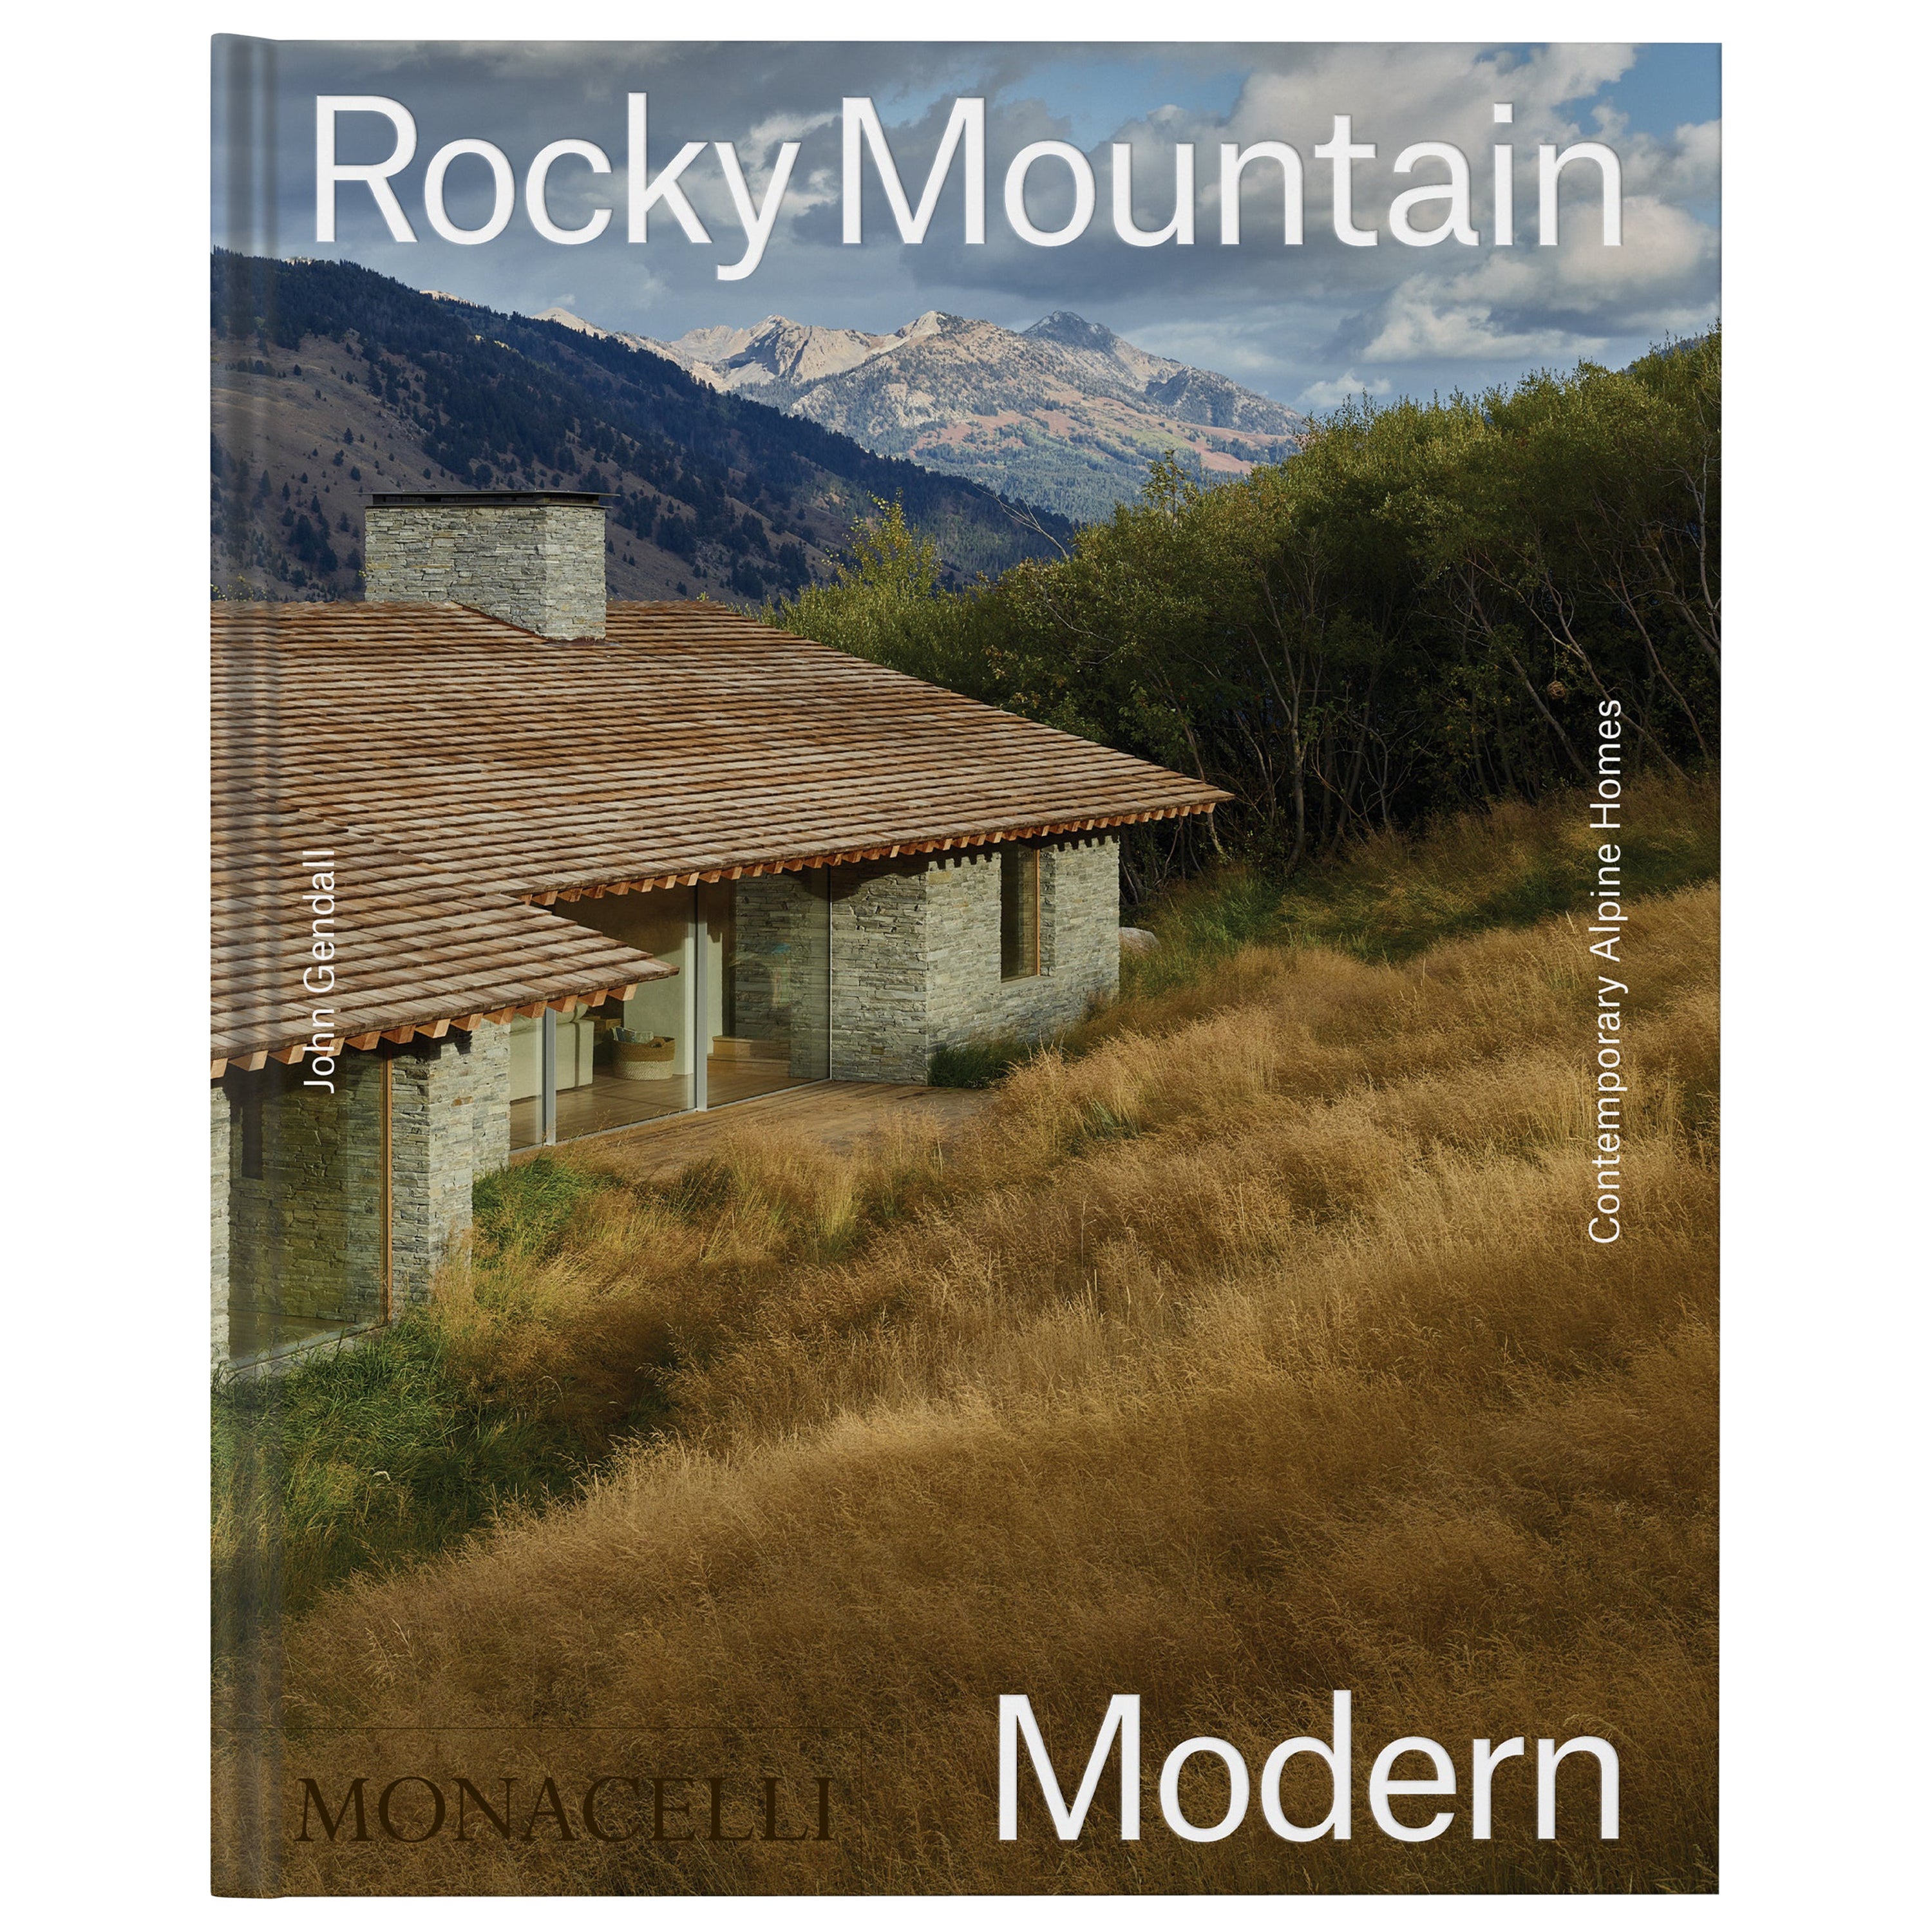 Montagnes rocheuses modernes : maisons alpines contemporaines en vente